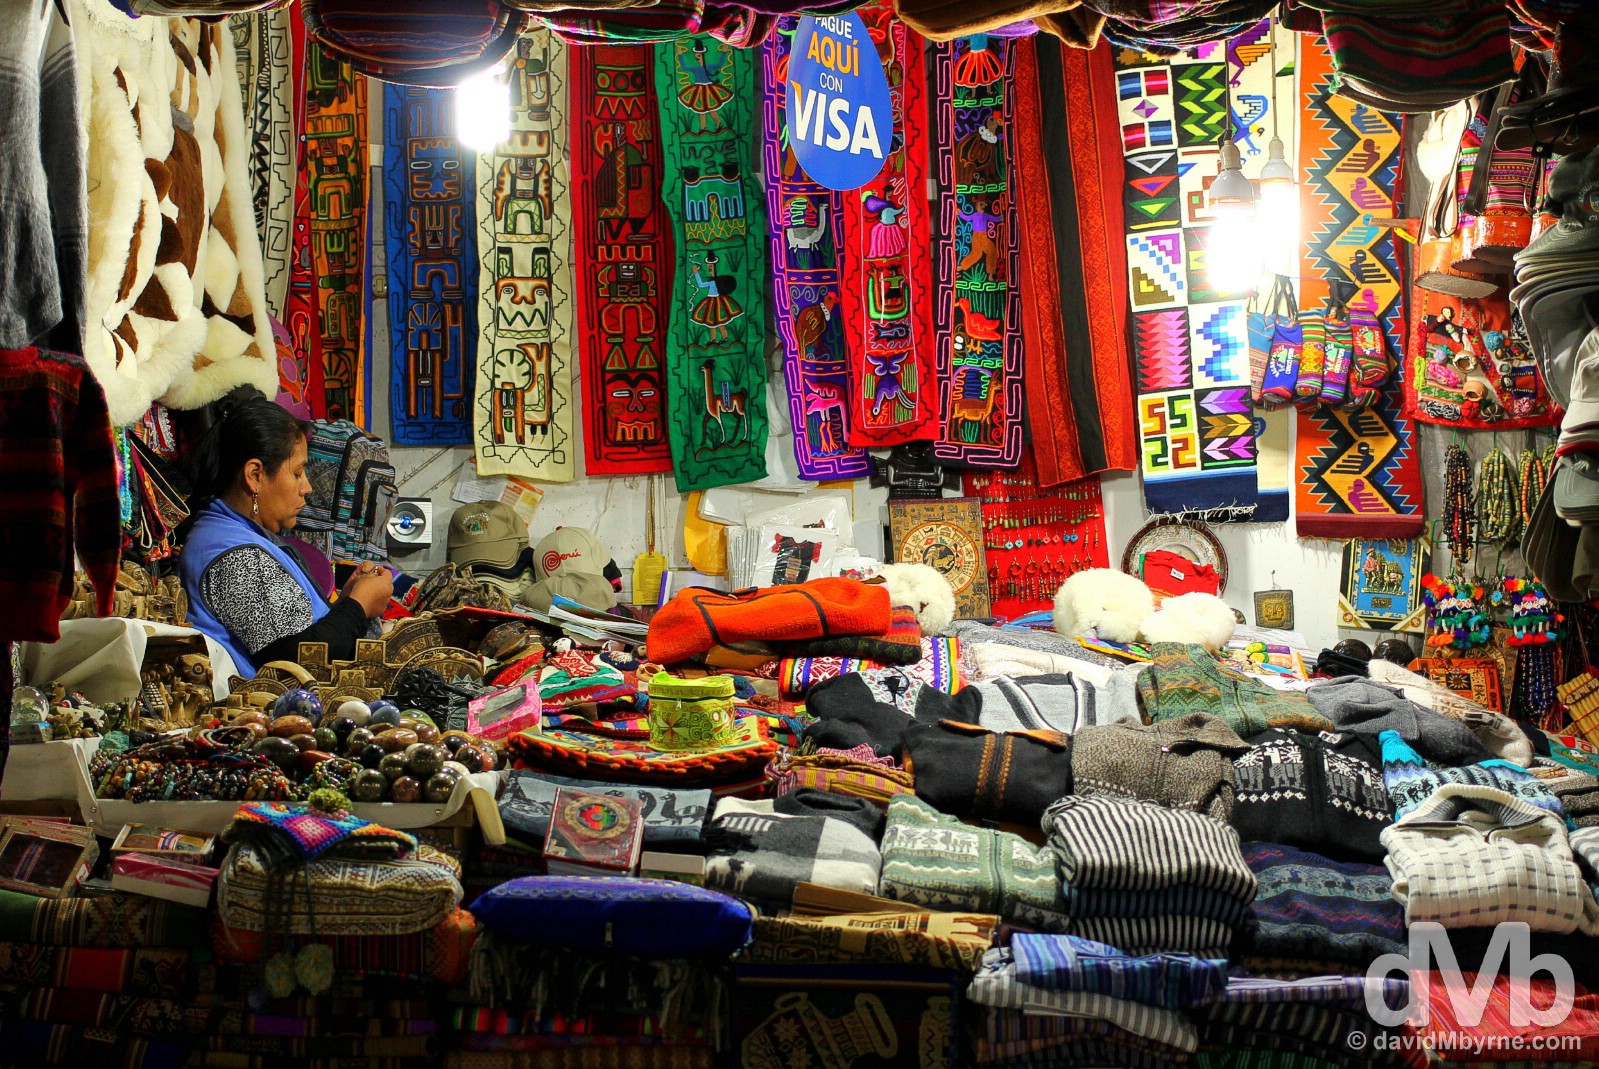 A market stall in Machu Picchu Peublo/Aguas Calientes, Peru. August 14, 2015.